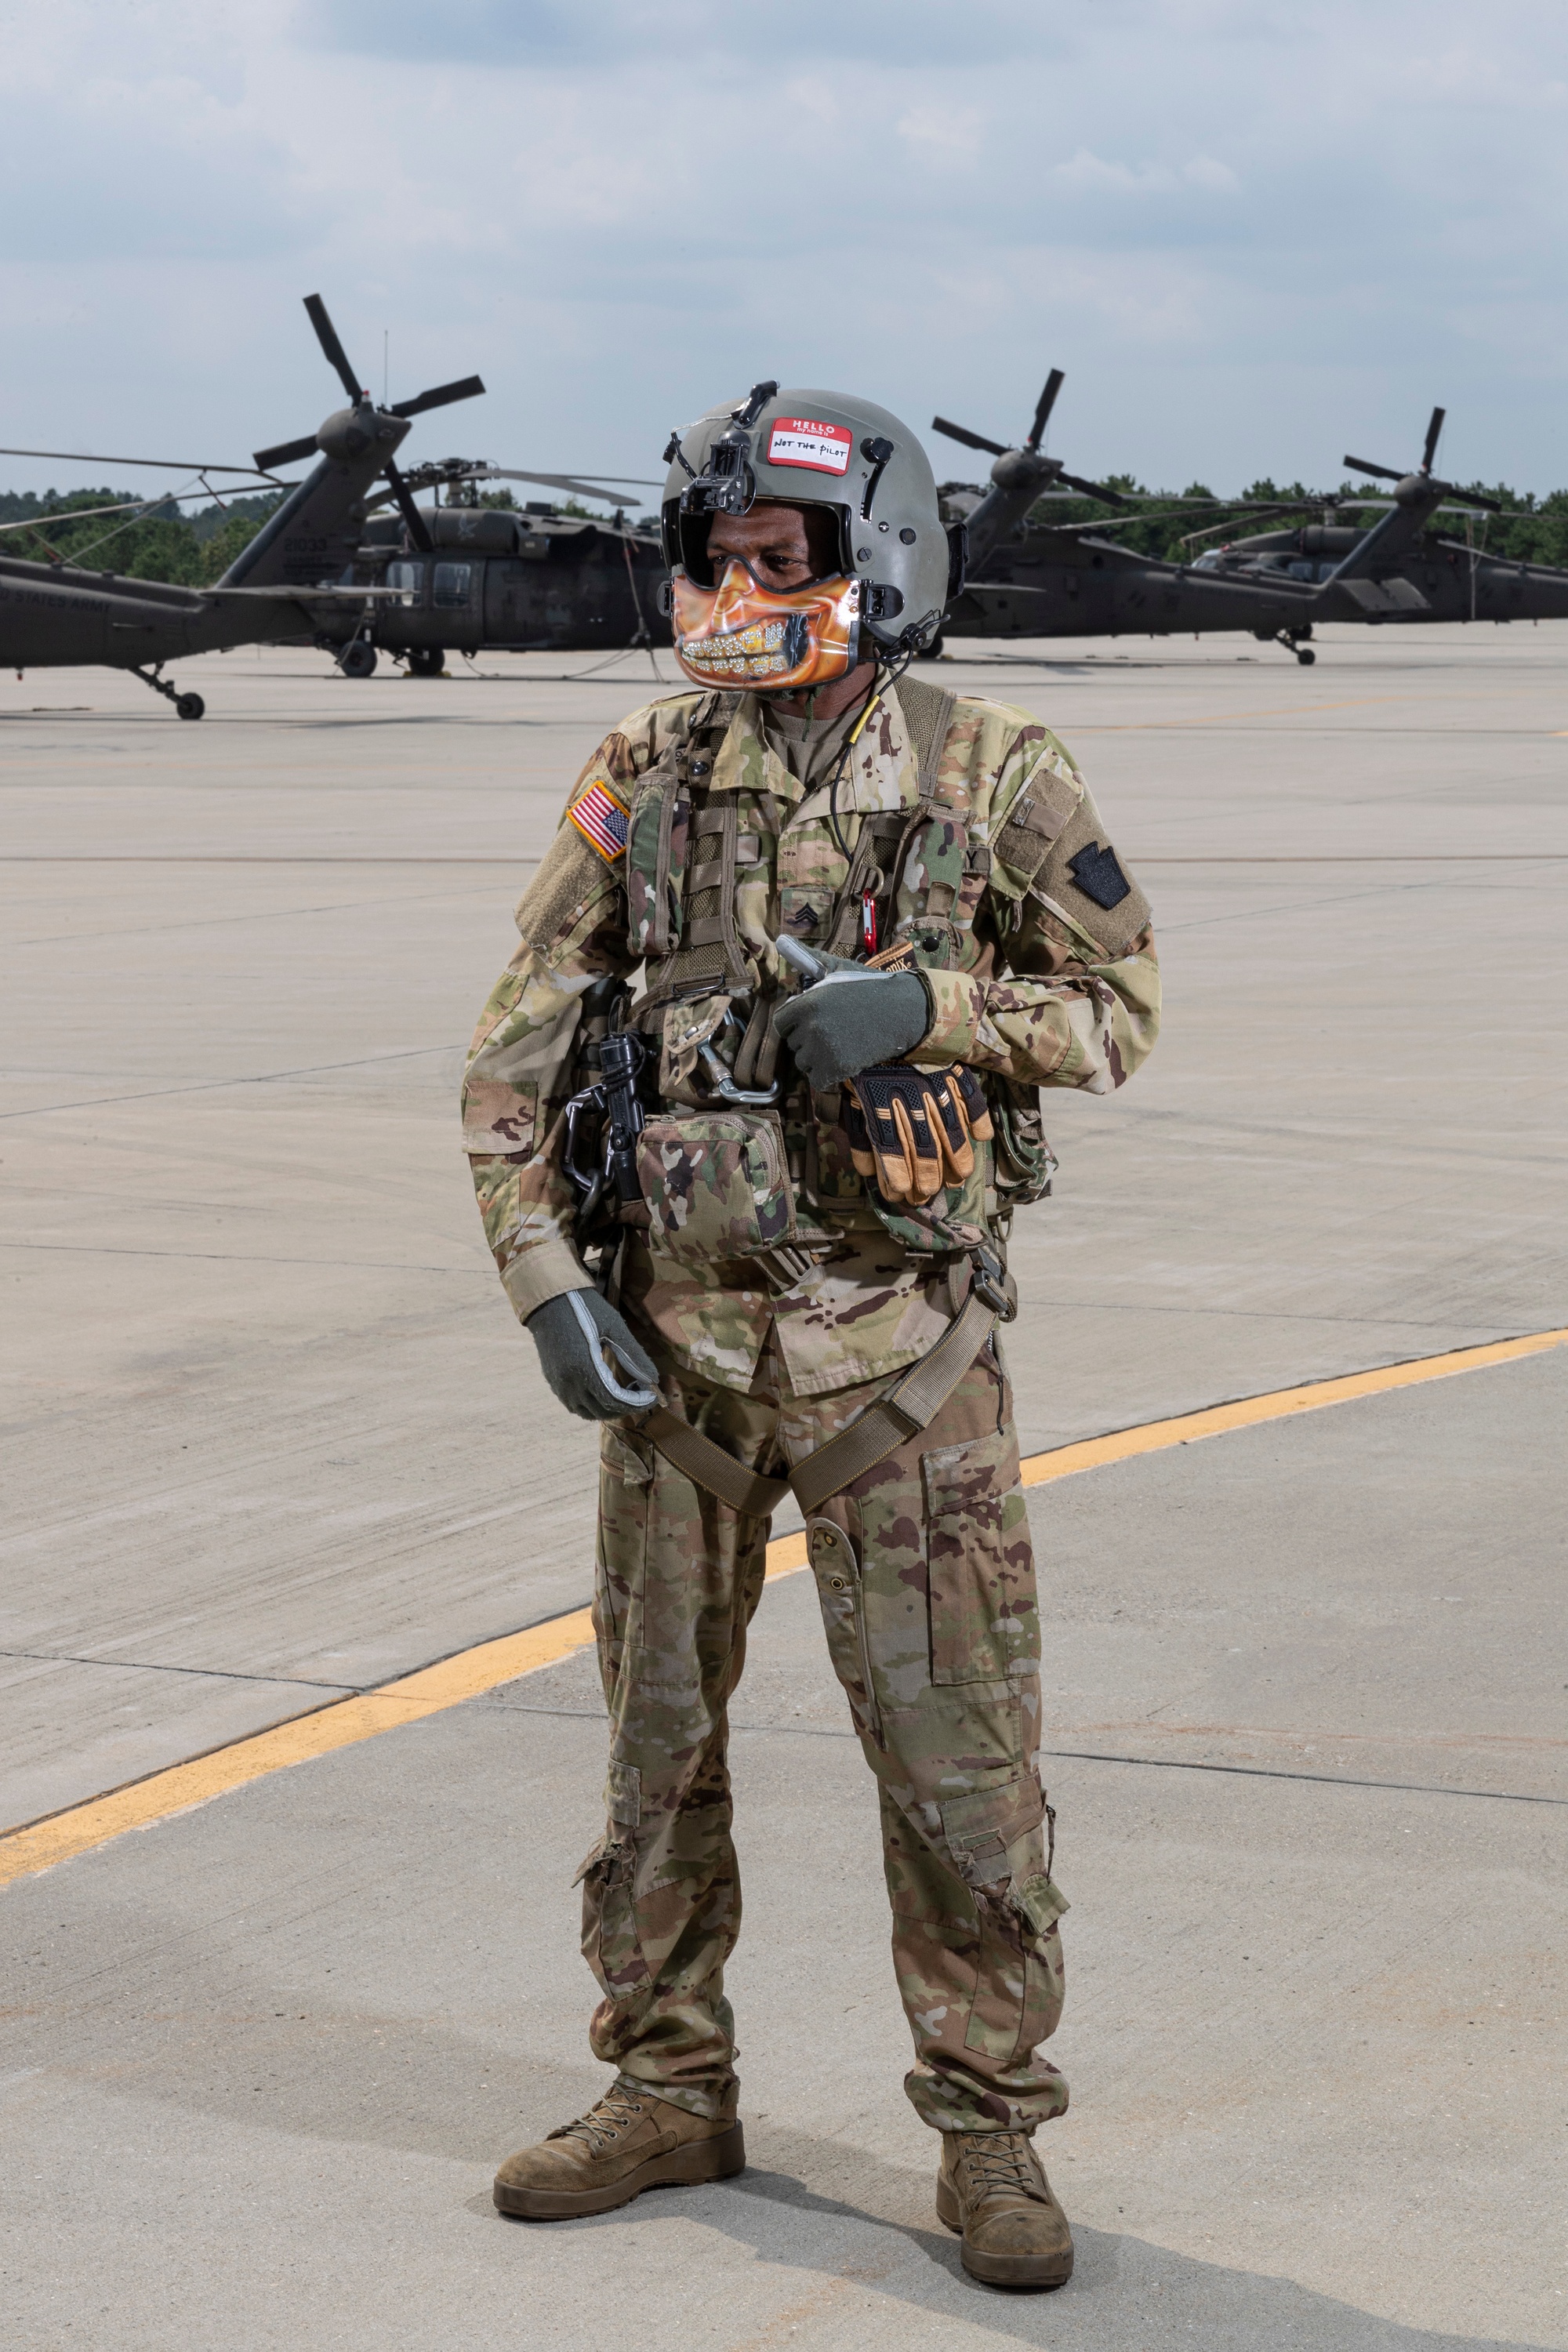 DVIDS - Images - New Jersey National Guard MEDEVAC pilot [Image 3